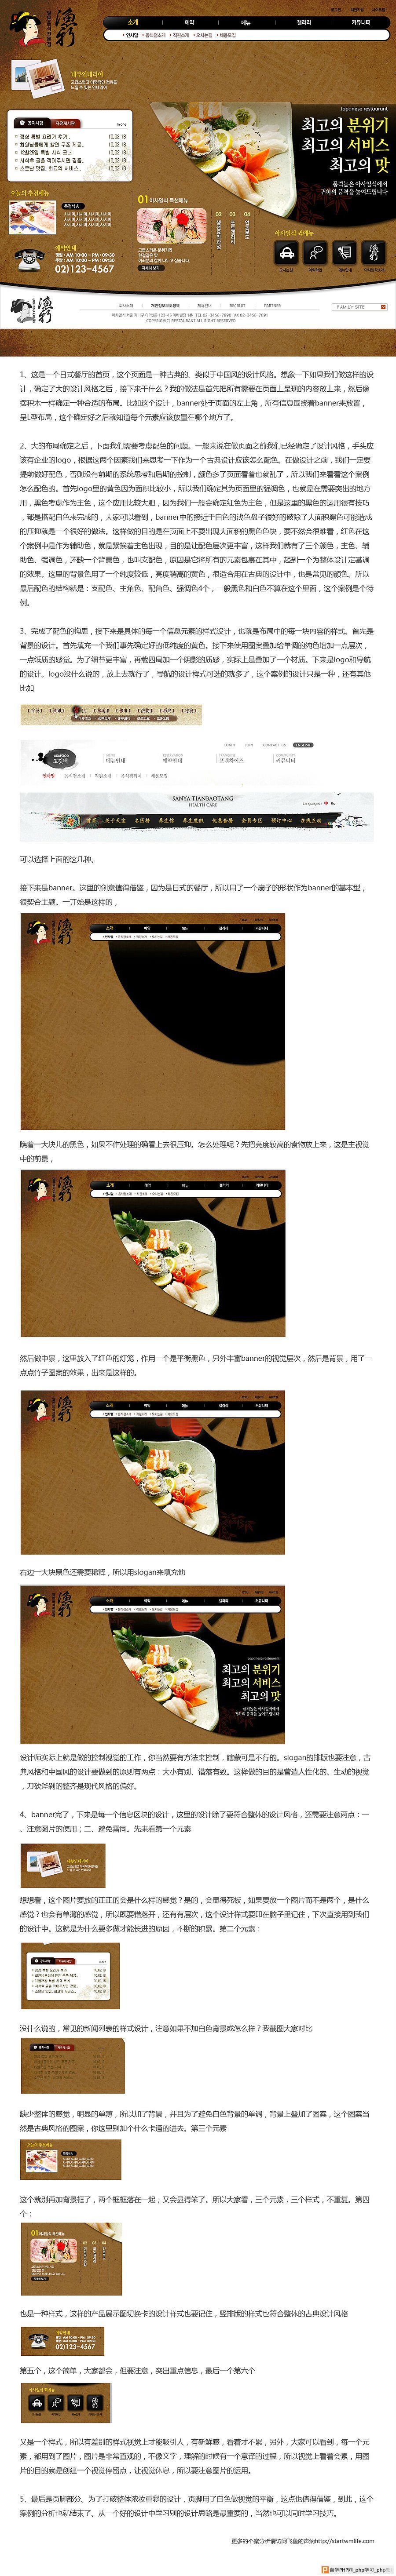 日式餐厅网站首页设计个案分析_交互设计教程